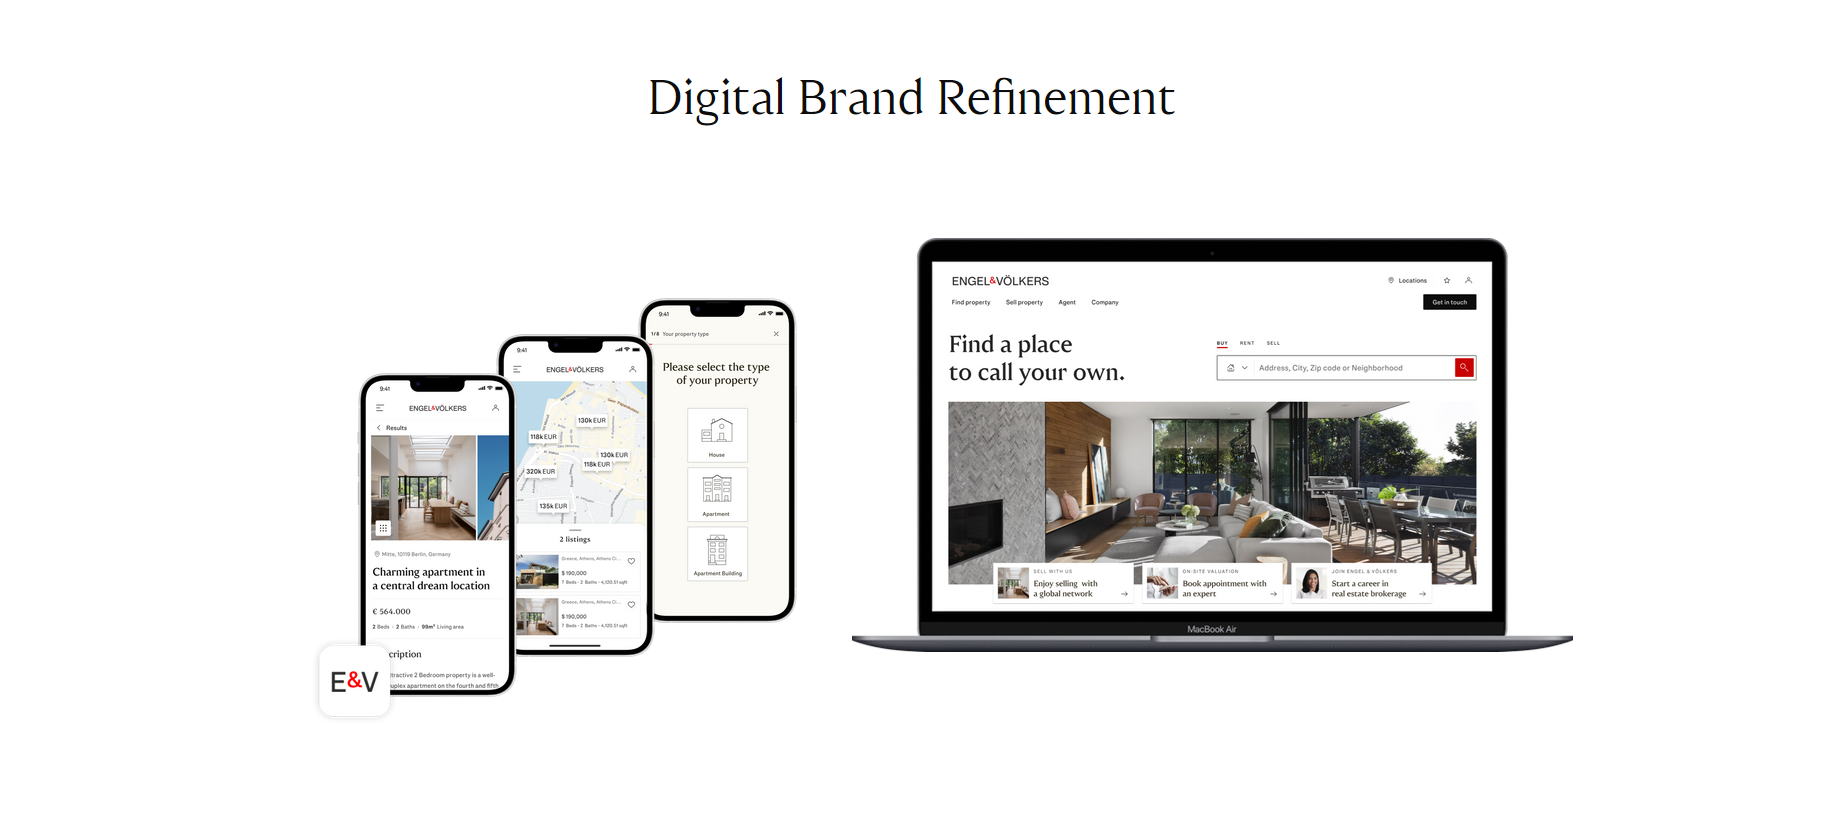 Digital Brand Refinement